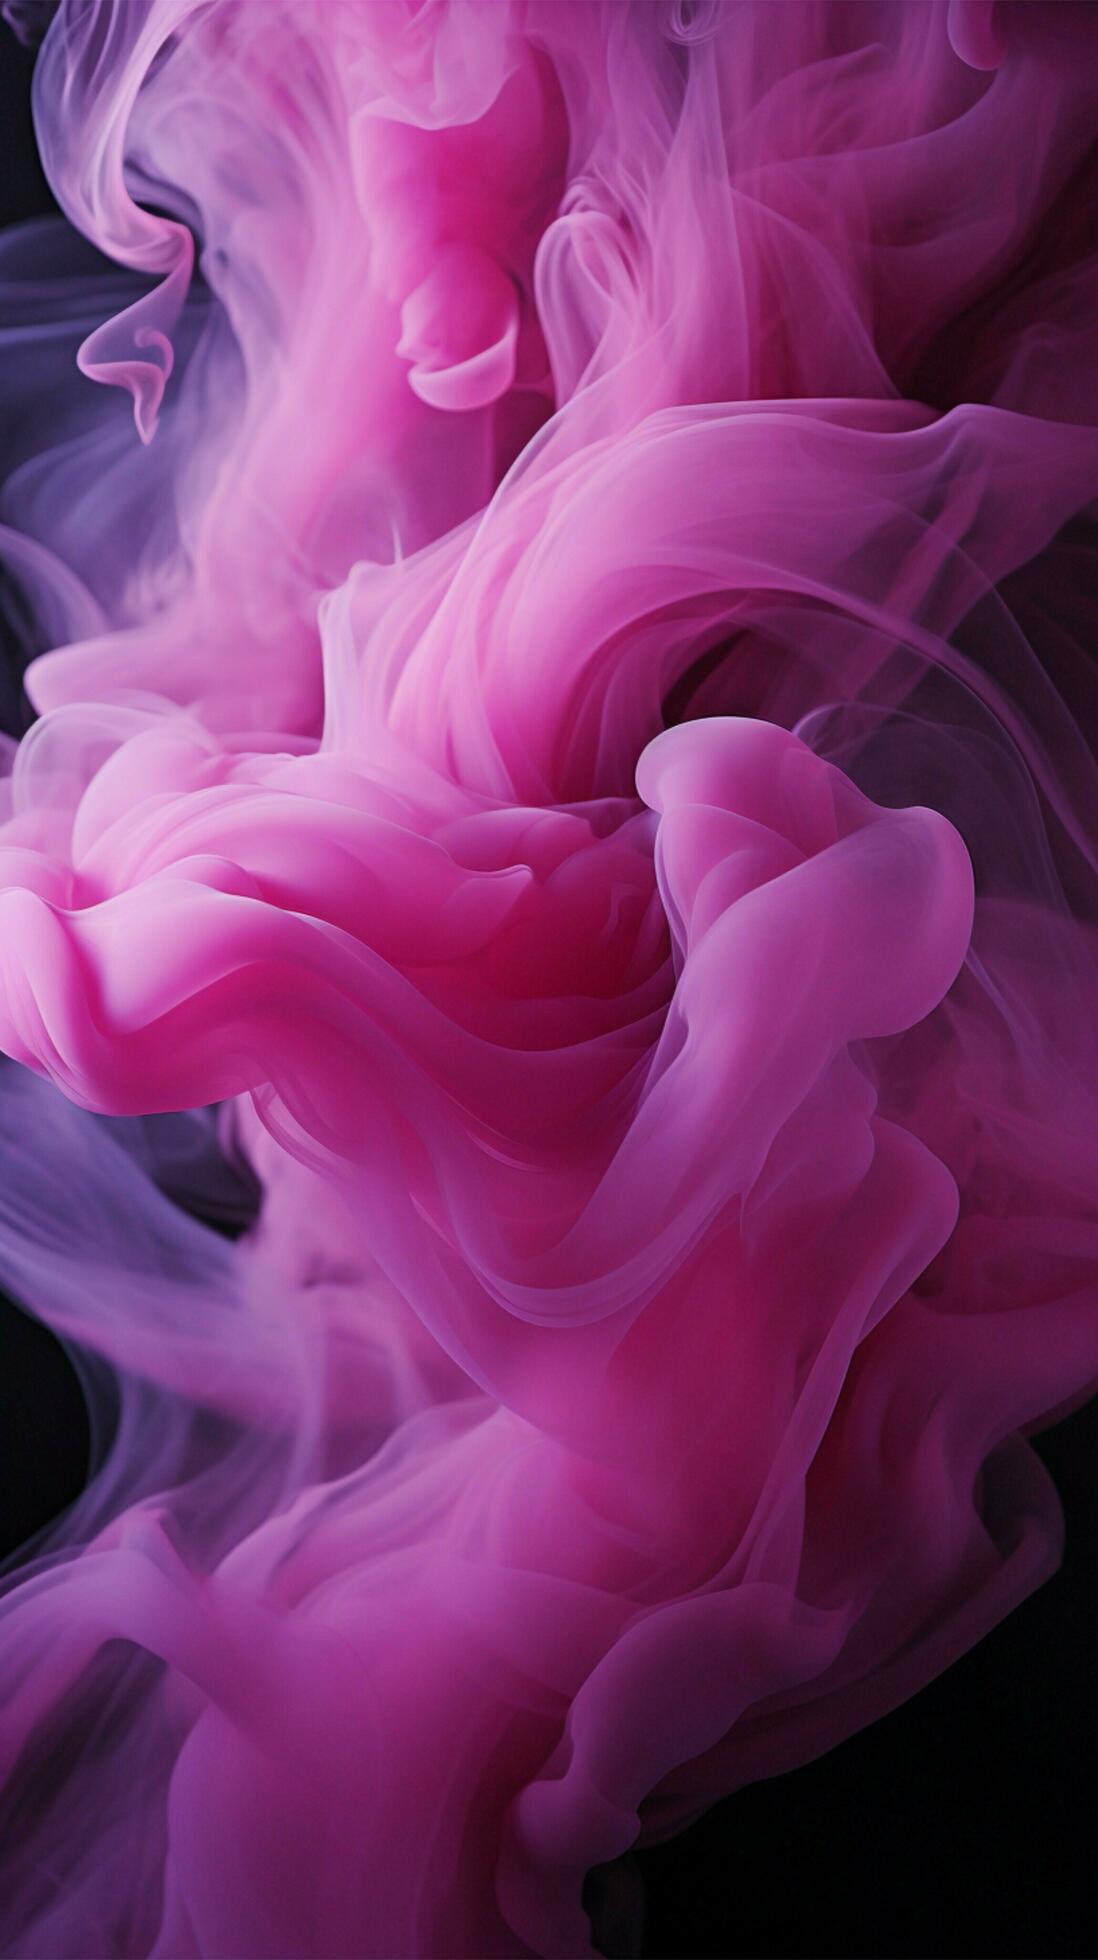  Magenta Hintergrundbild 1098x1960. Misty Pink, Magenta, and Purple Swirls on Dark Background Vertical Mobile Wallpaper AI Generated